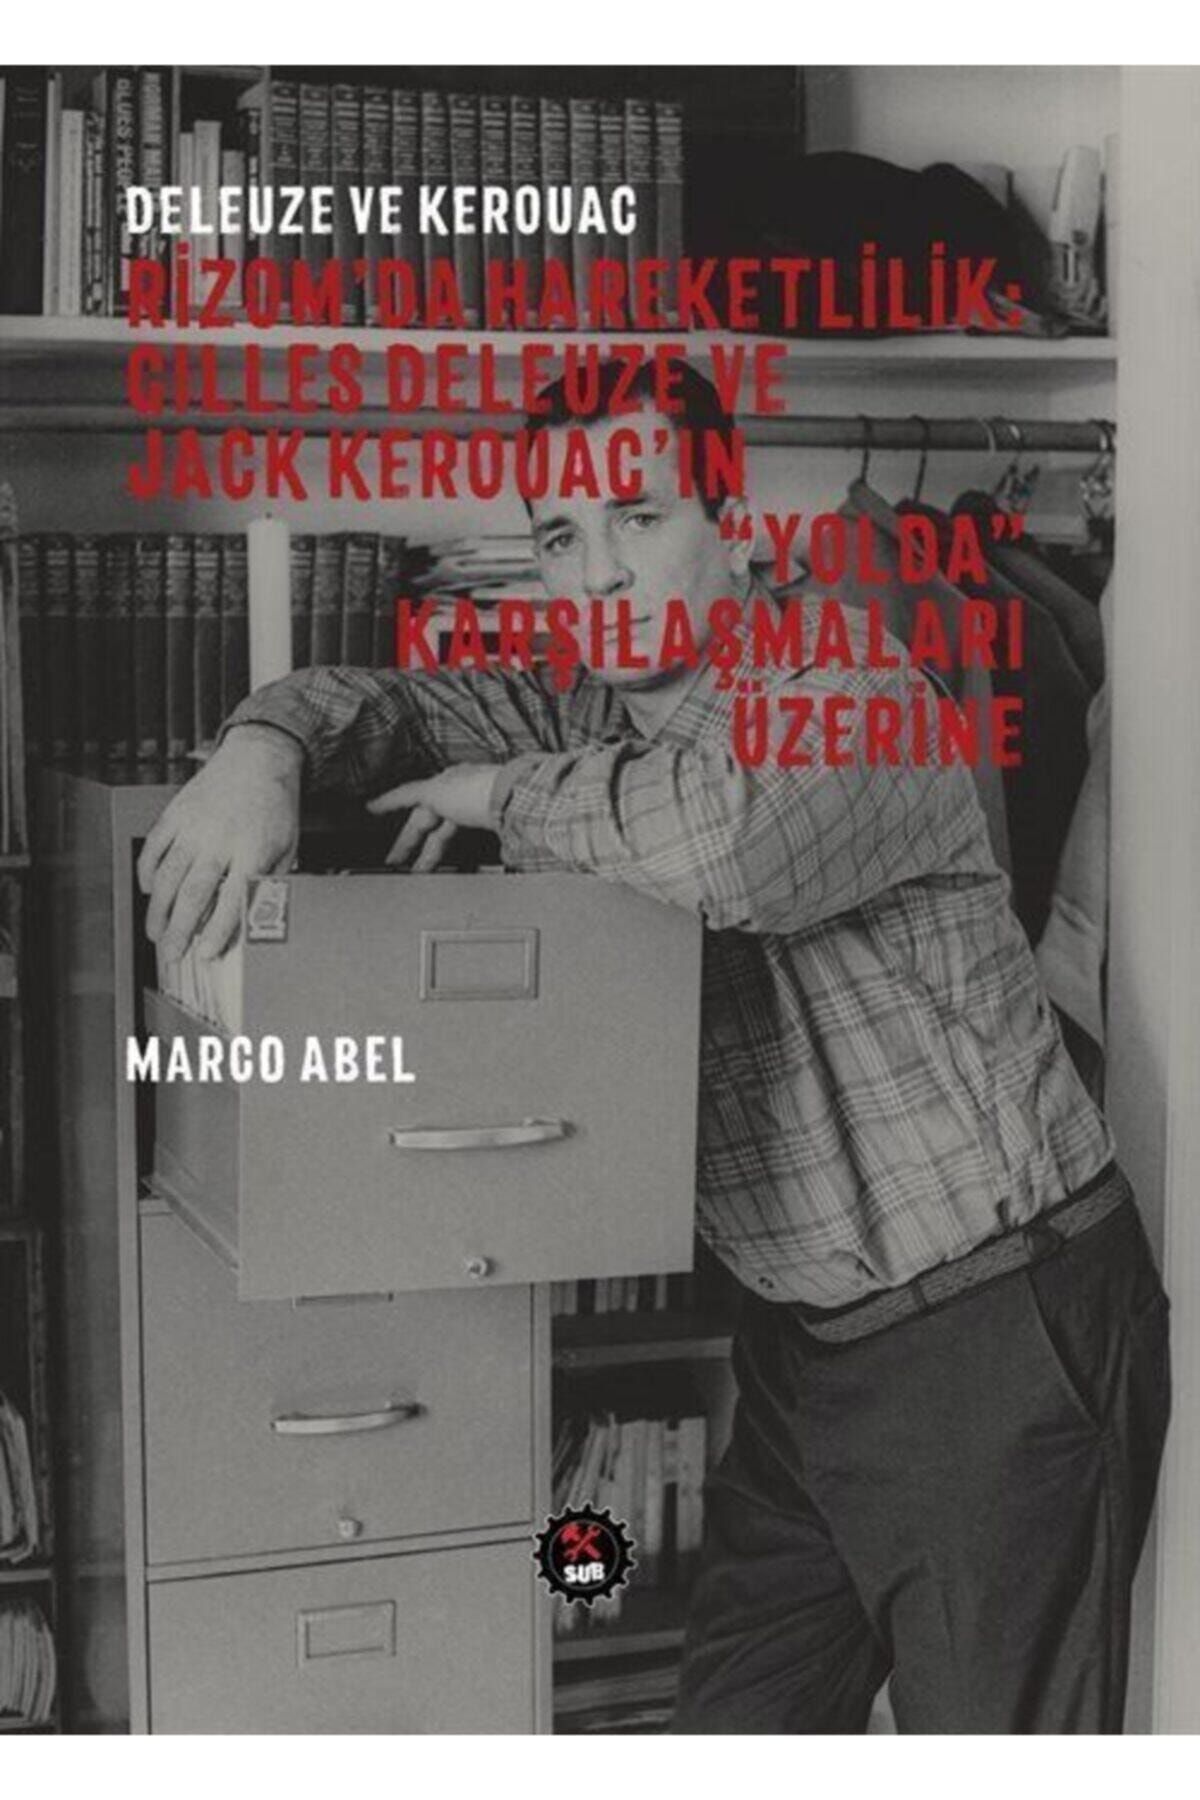 SUB Basın Yayım Deleuze Ve Kerouac - Rizom'da Hareketlilik: Gilles Deleuze Ve Jack Kerouac'ın "yolda" Karşılaşma